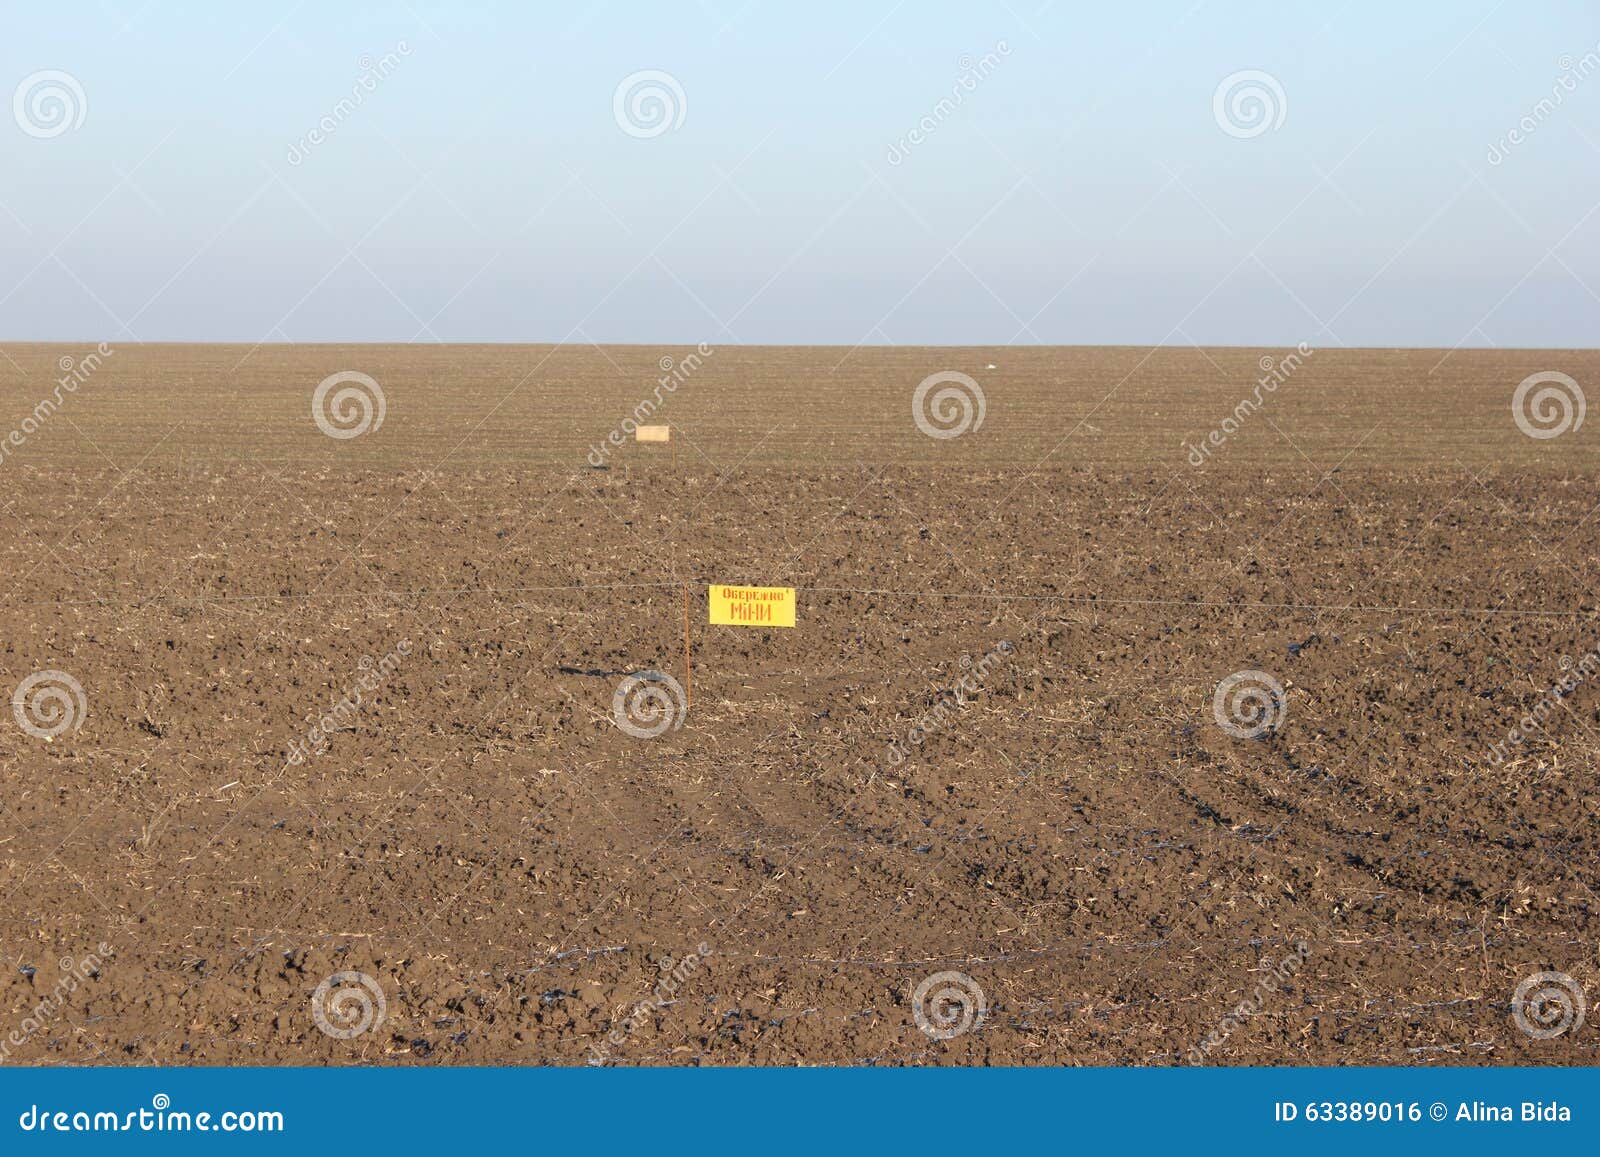 minefield mariupol eastern ukraine mines war